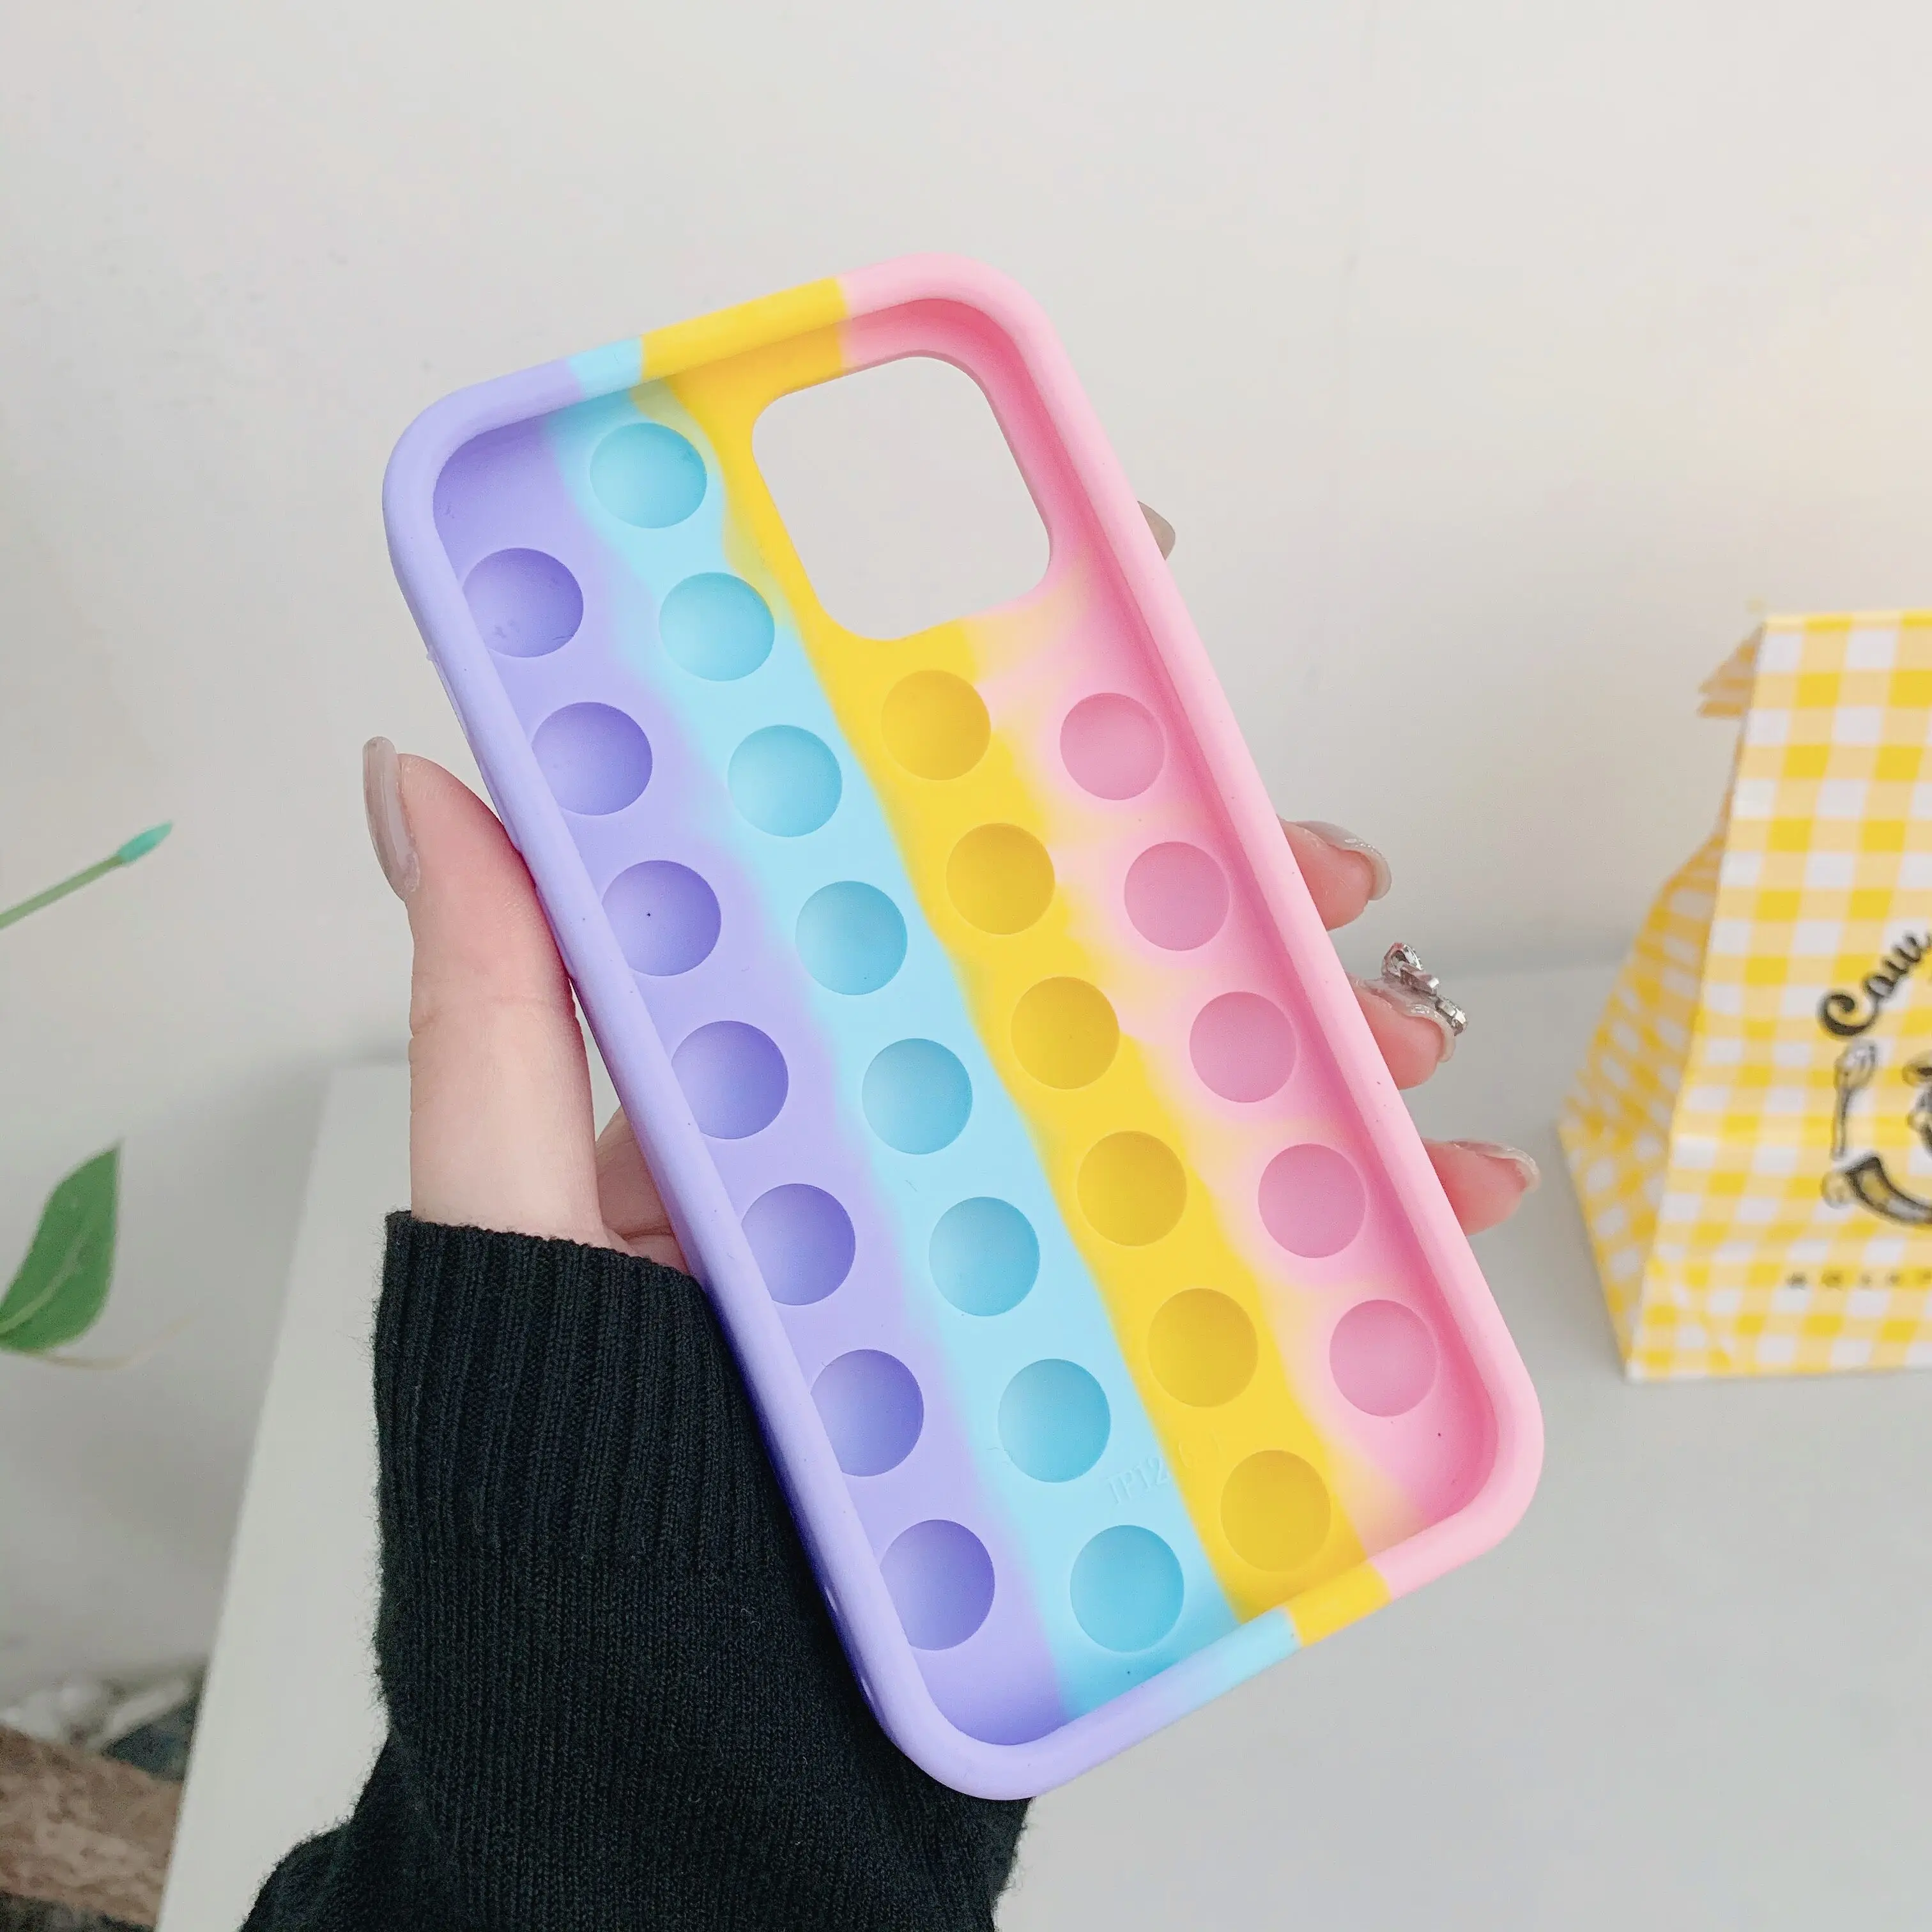  EVERMARKET Push Pop Bubble Fidget Sensory Toy Case for iPhone 7  Plus/ 8 Plus, Rainbow Color Push Pop Bubble Silicone Case for iPhone 7  Puls/ 8Plus, Silicone Drop Protection Case 5.5